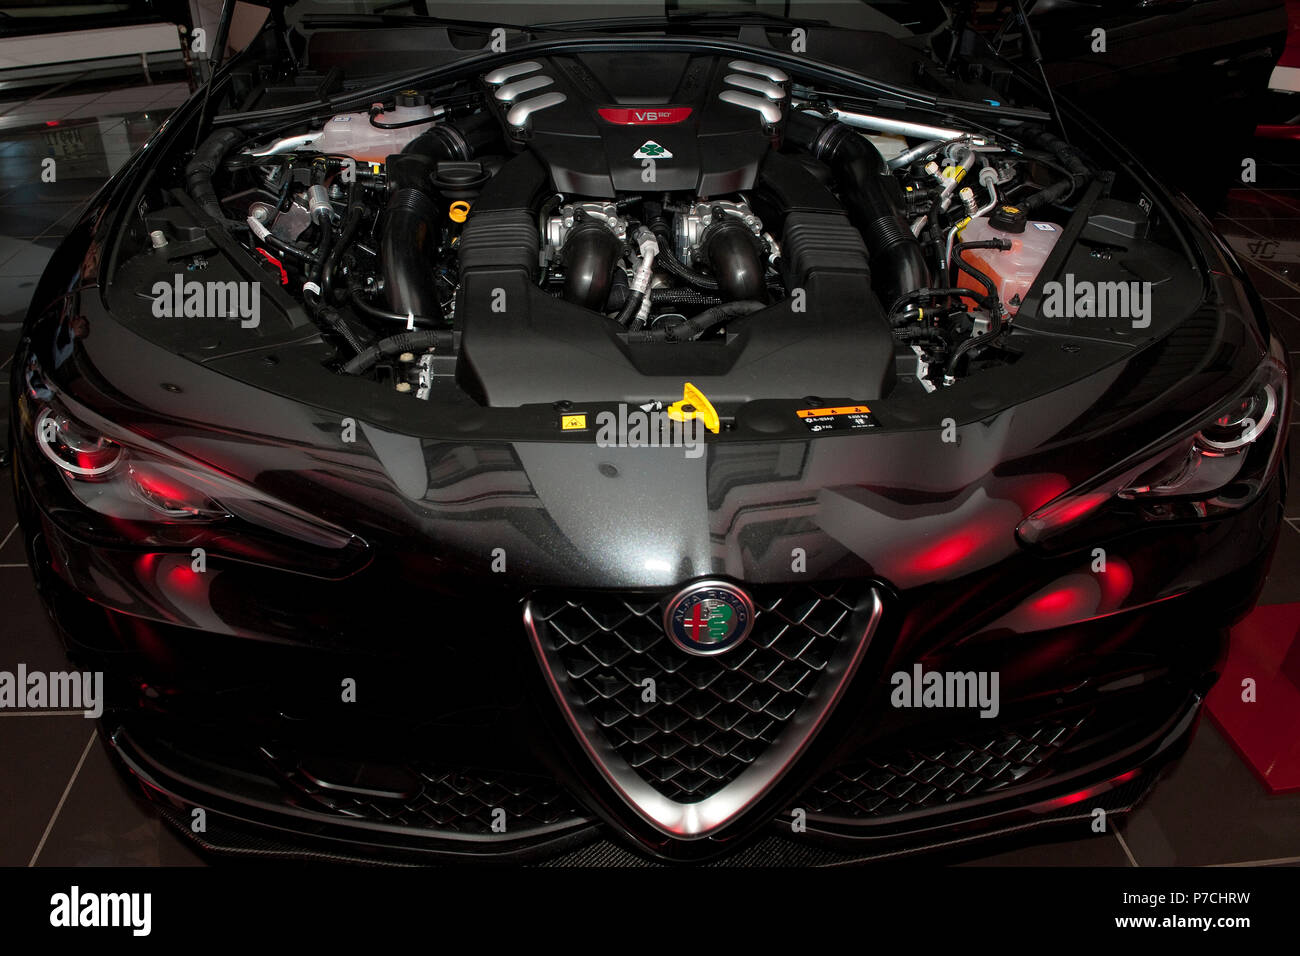 Alfa Romeo Giulia QV, Quadrofoglio, 510 HP, V6 biturbo motore, turbo, italiano sportscar, car design, look aggressivo Foto Stock